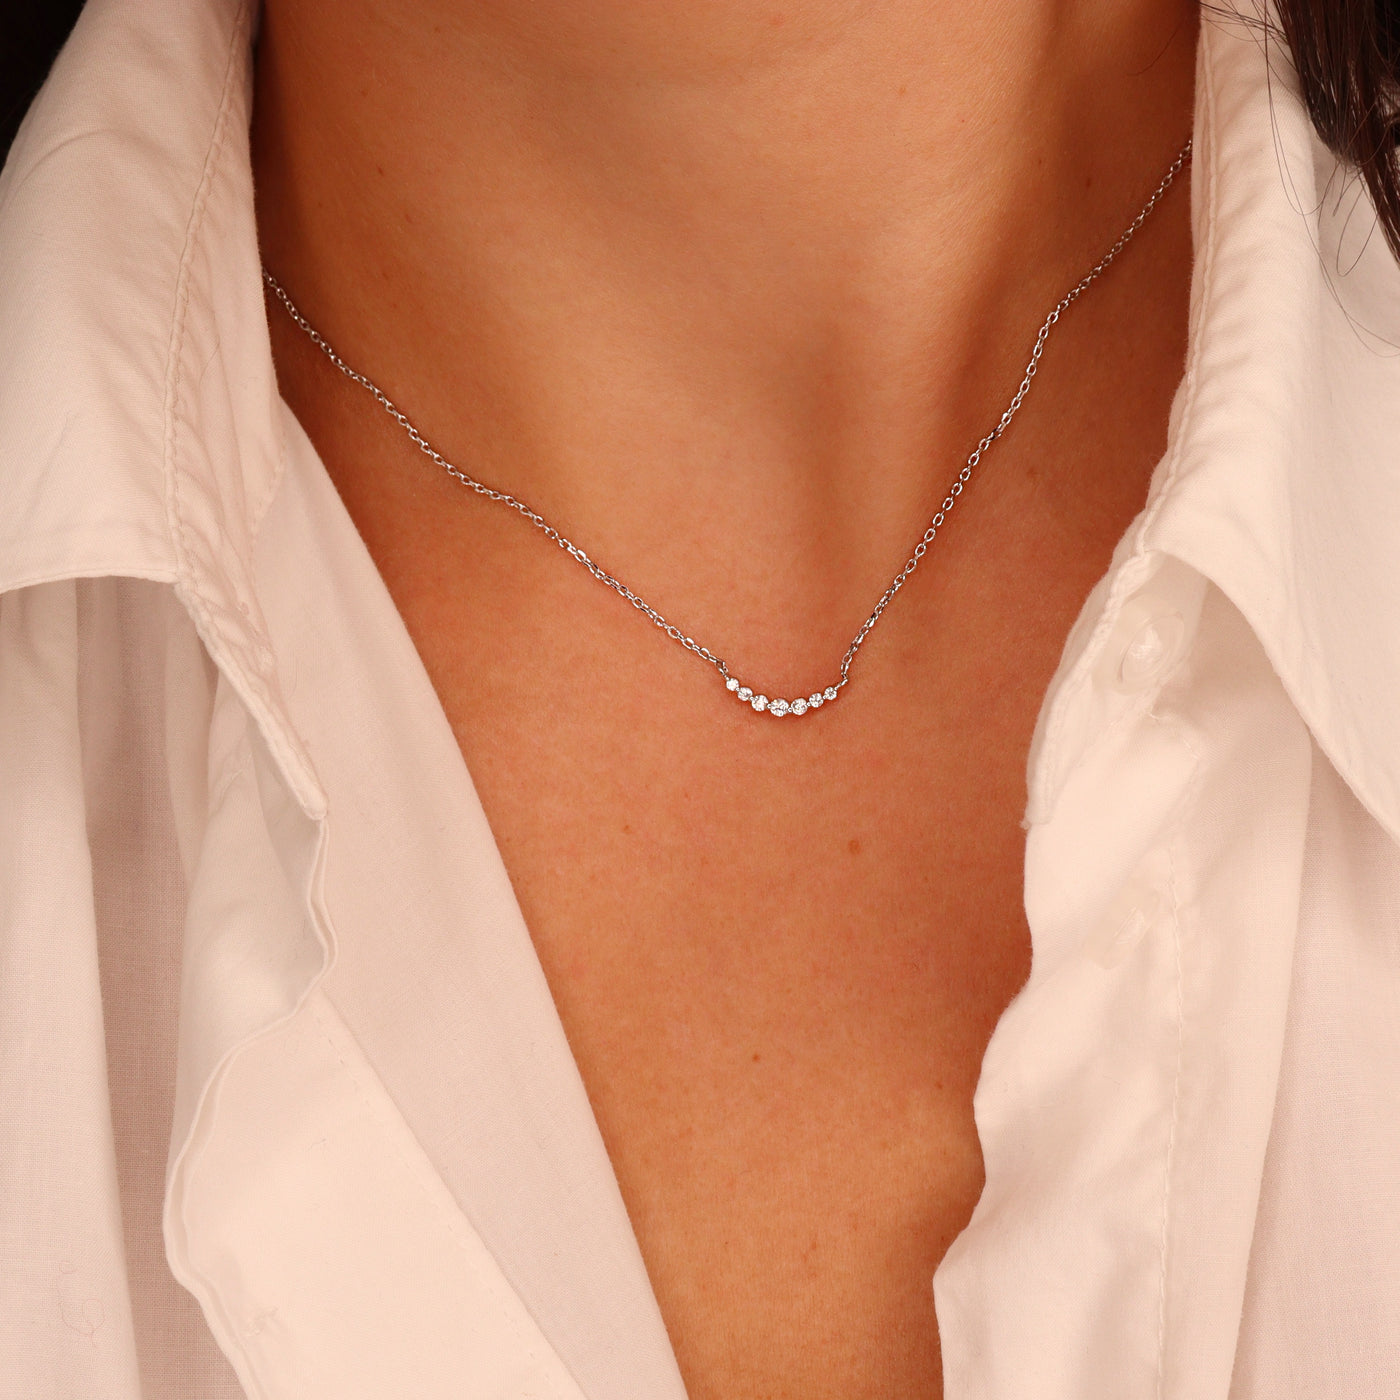 Pamela necklace